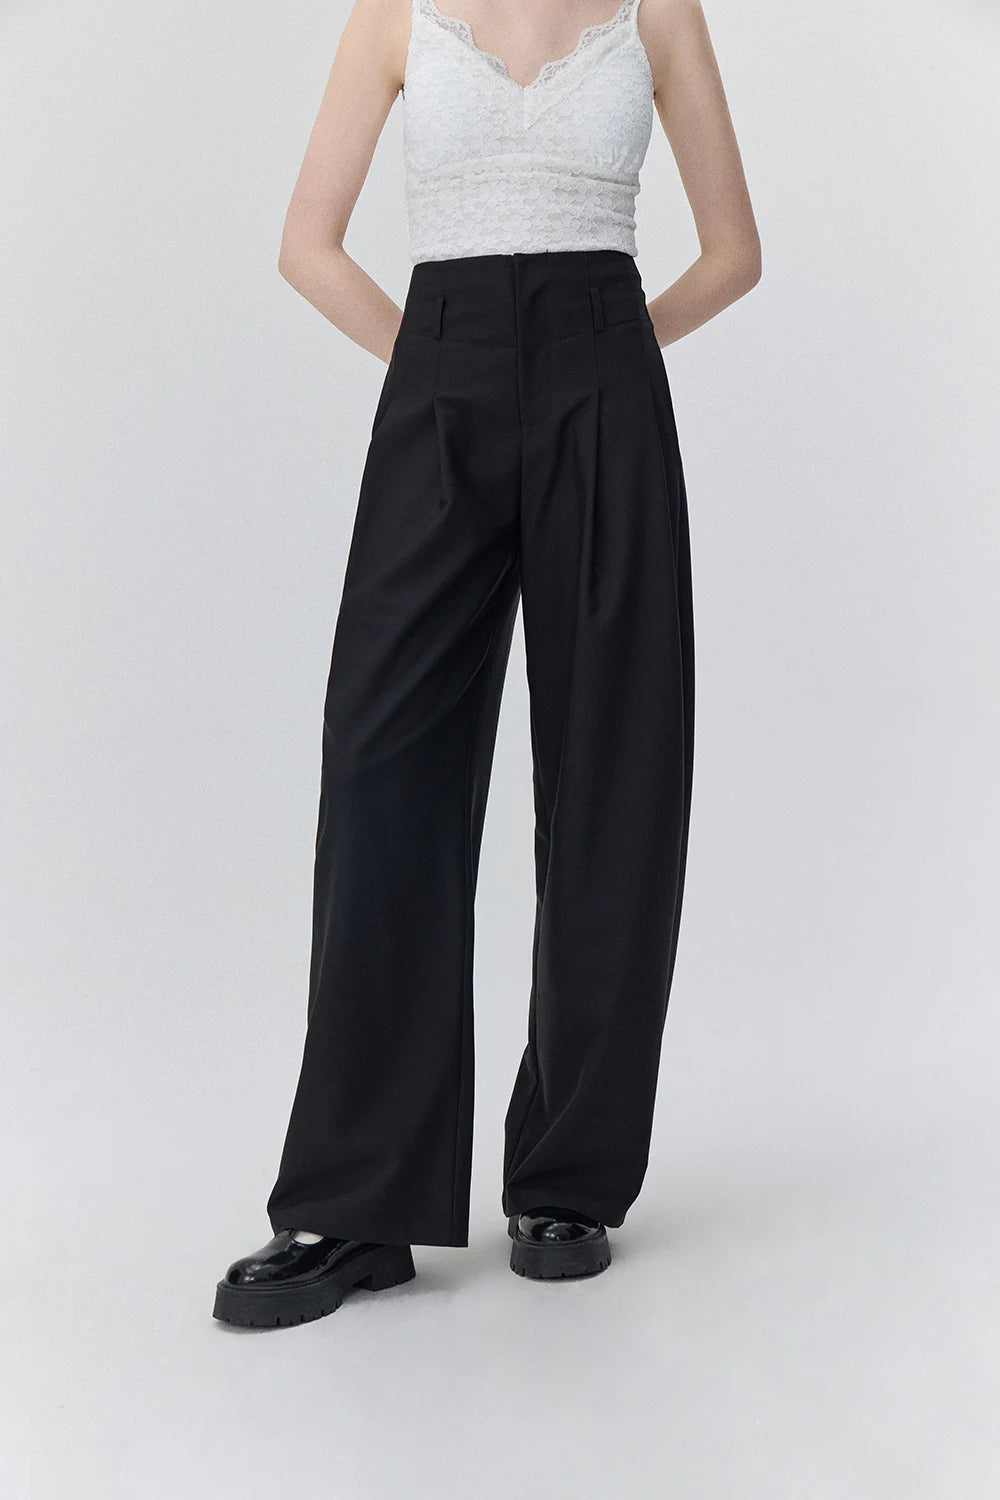 Pantalon large ajusté pour une silhouette intemporelle